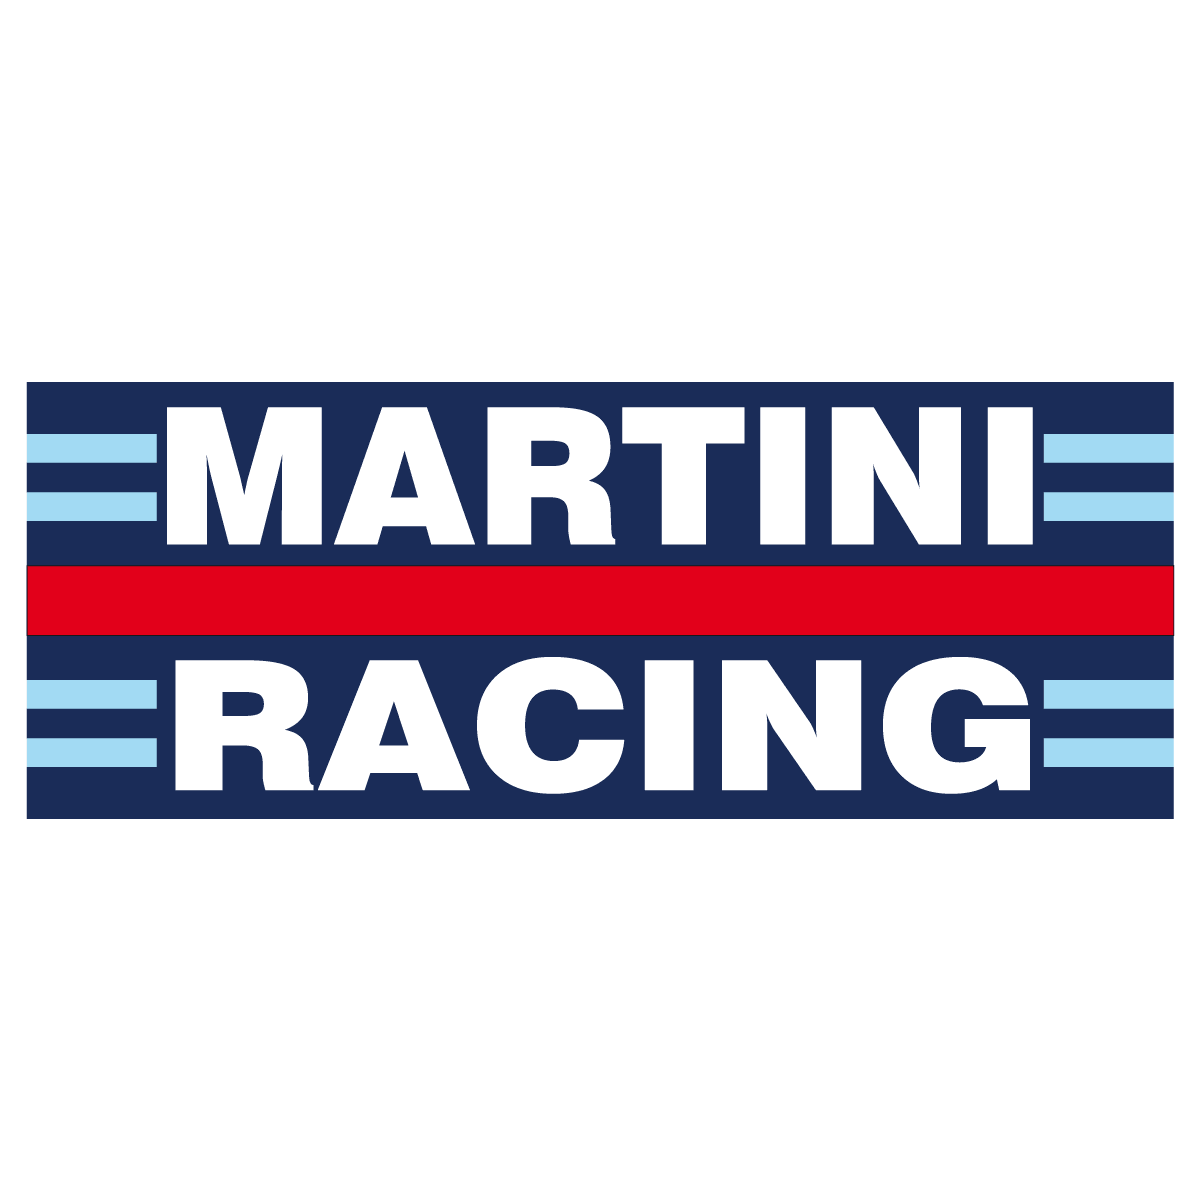 Adesivi per Auto e Moto: Martini racing